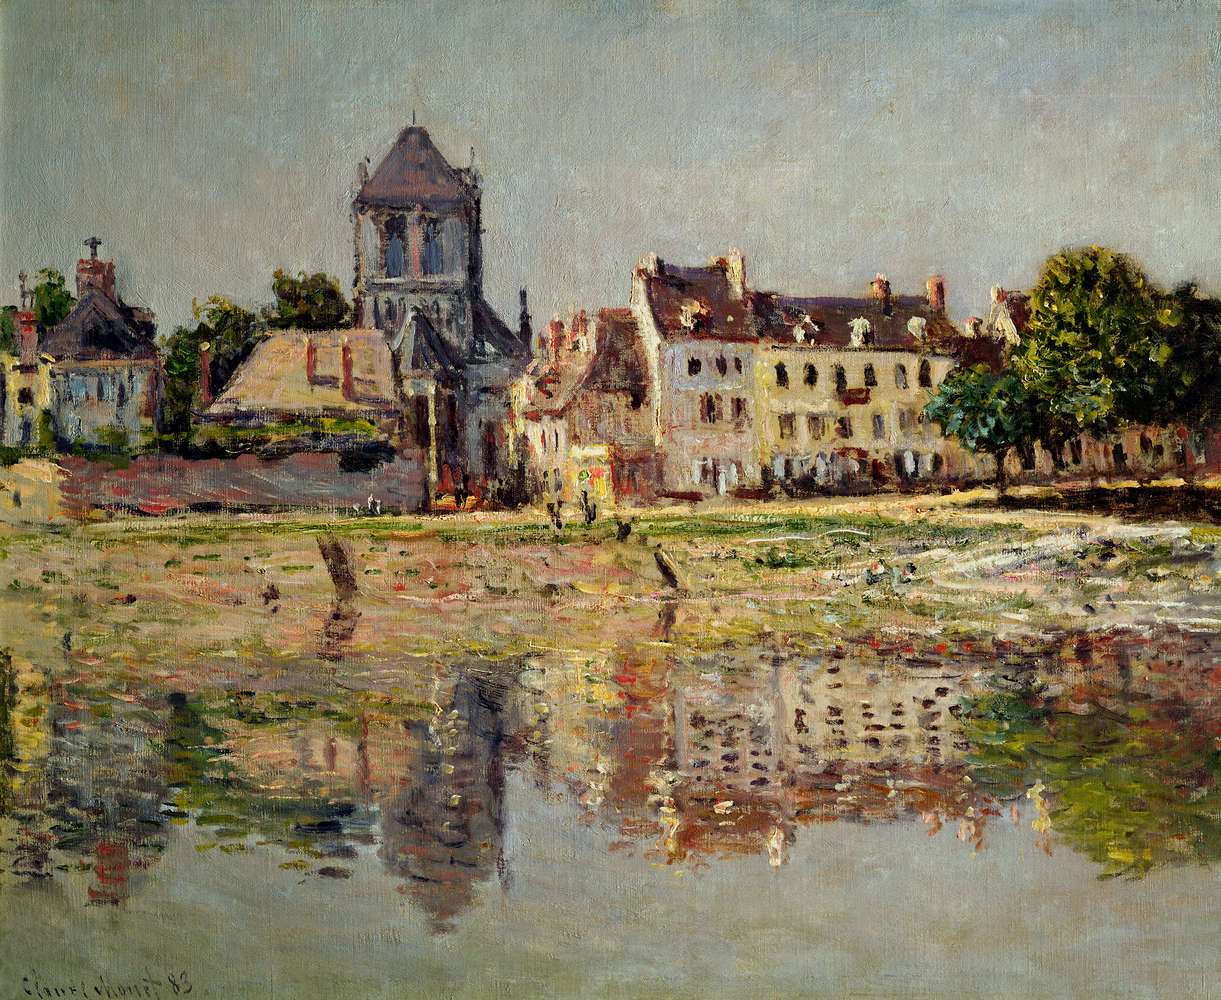             Papier peint panoramique "Au bord de la rivière près de Vernon" de Claude Monet
        